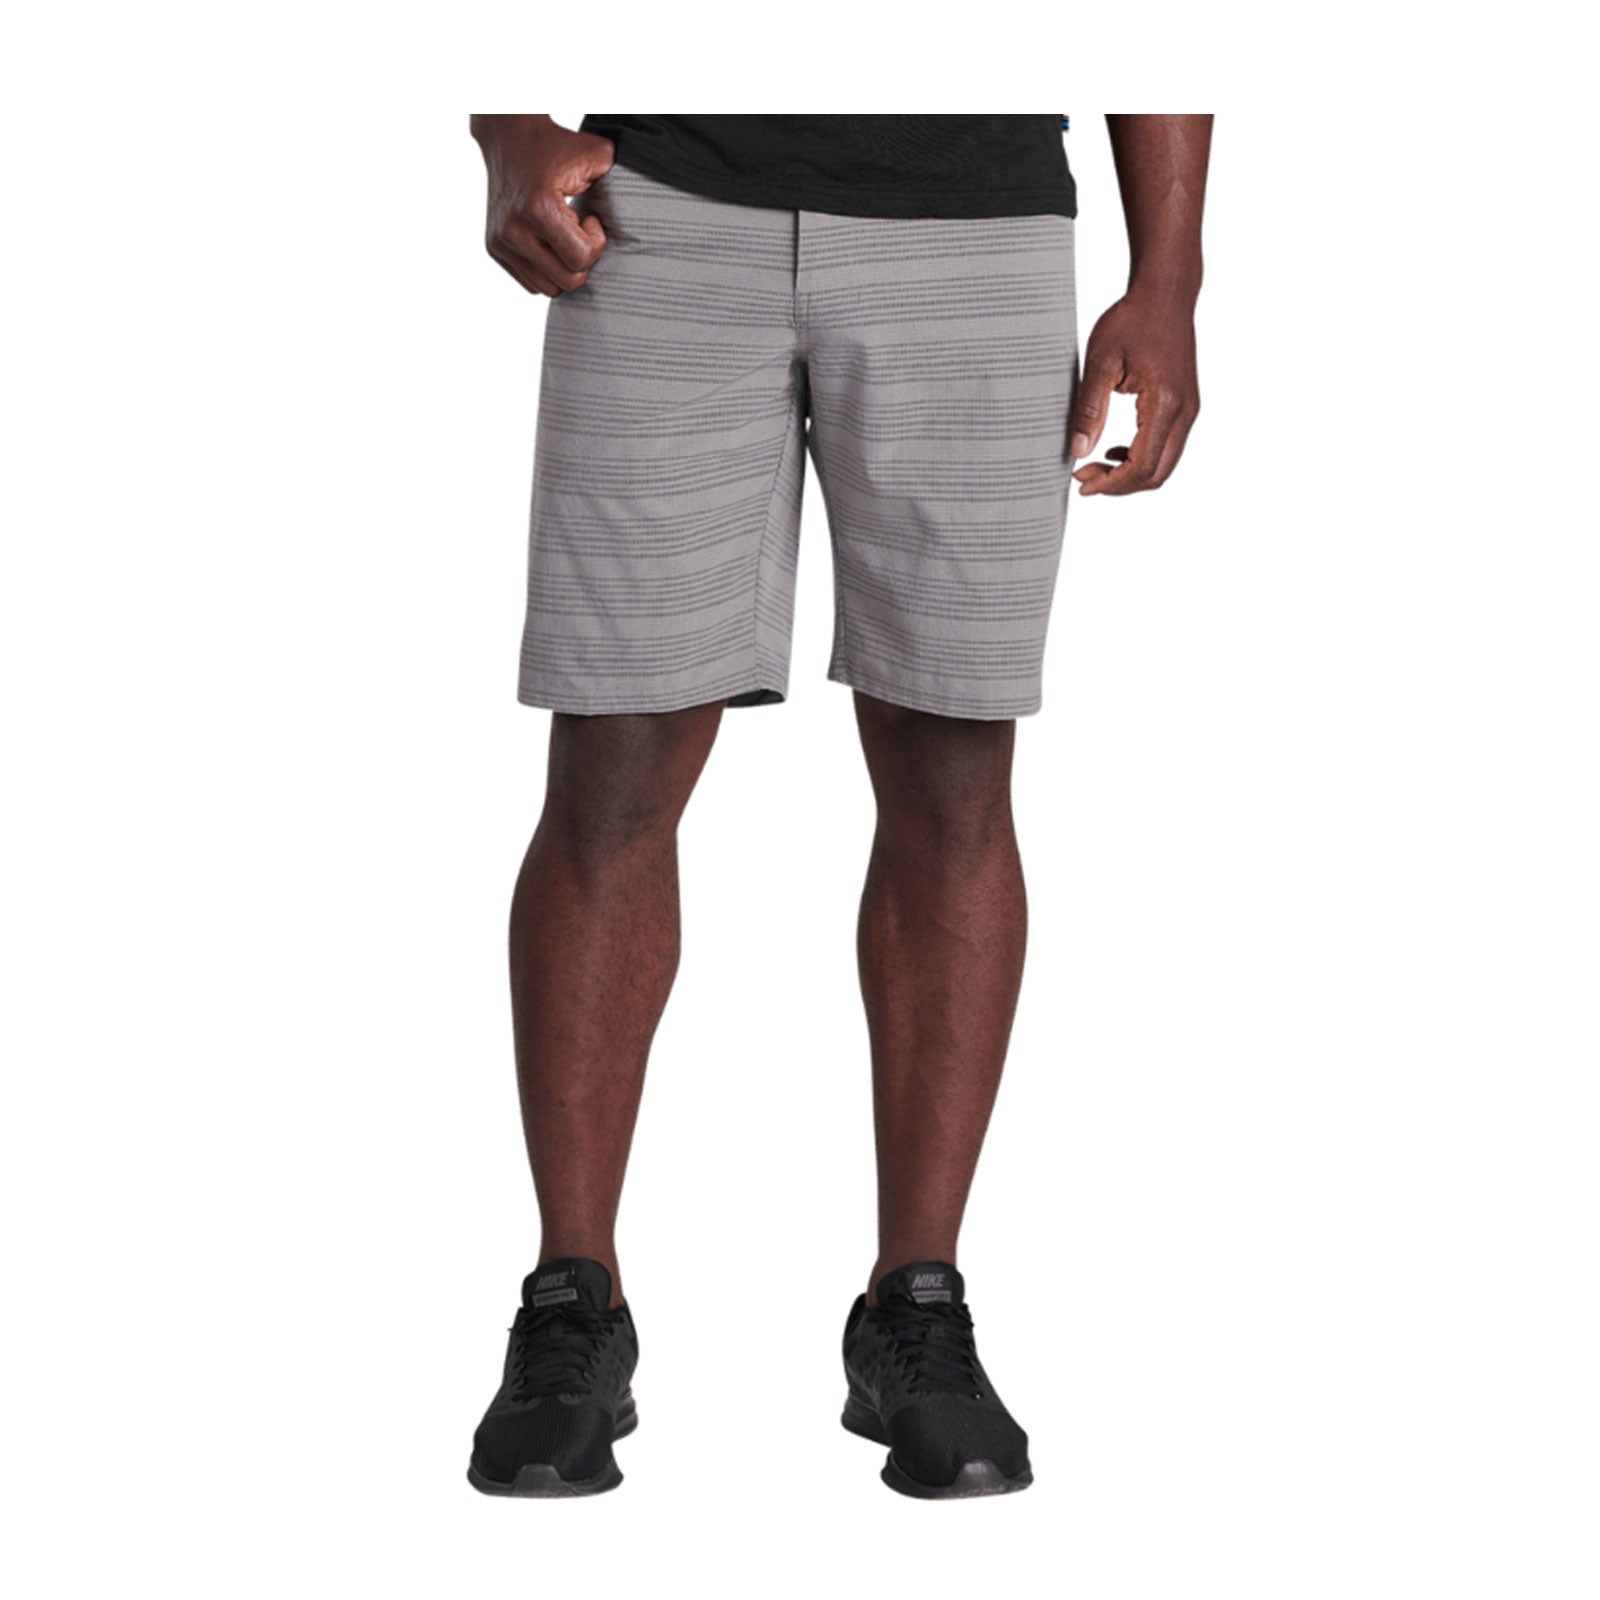 Kuhl Upriser Short (Men) - Stripe Grizzly Outerwear - Legwear - The Heel Shoe Fitters